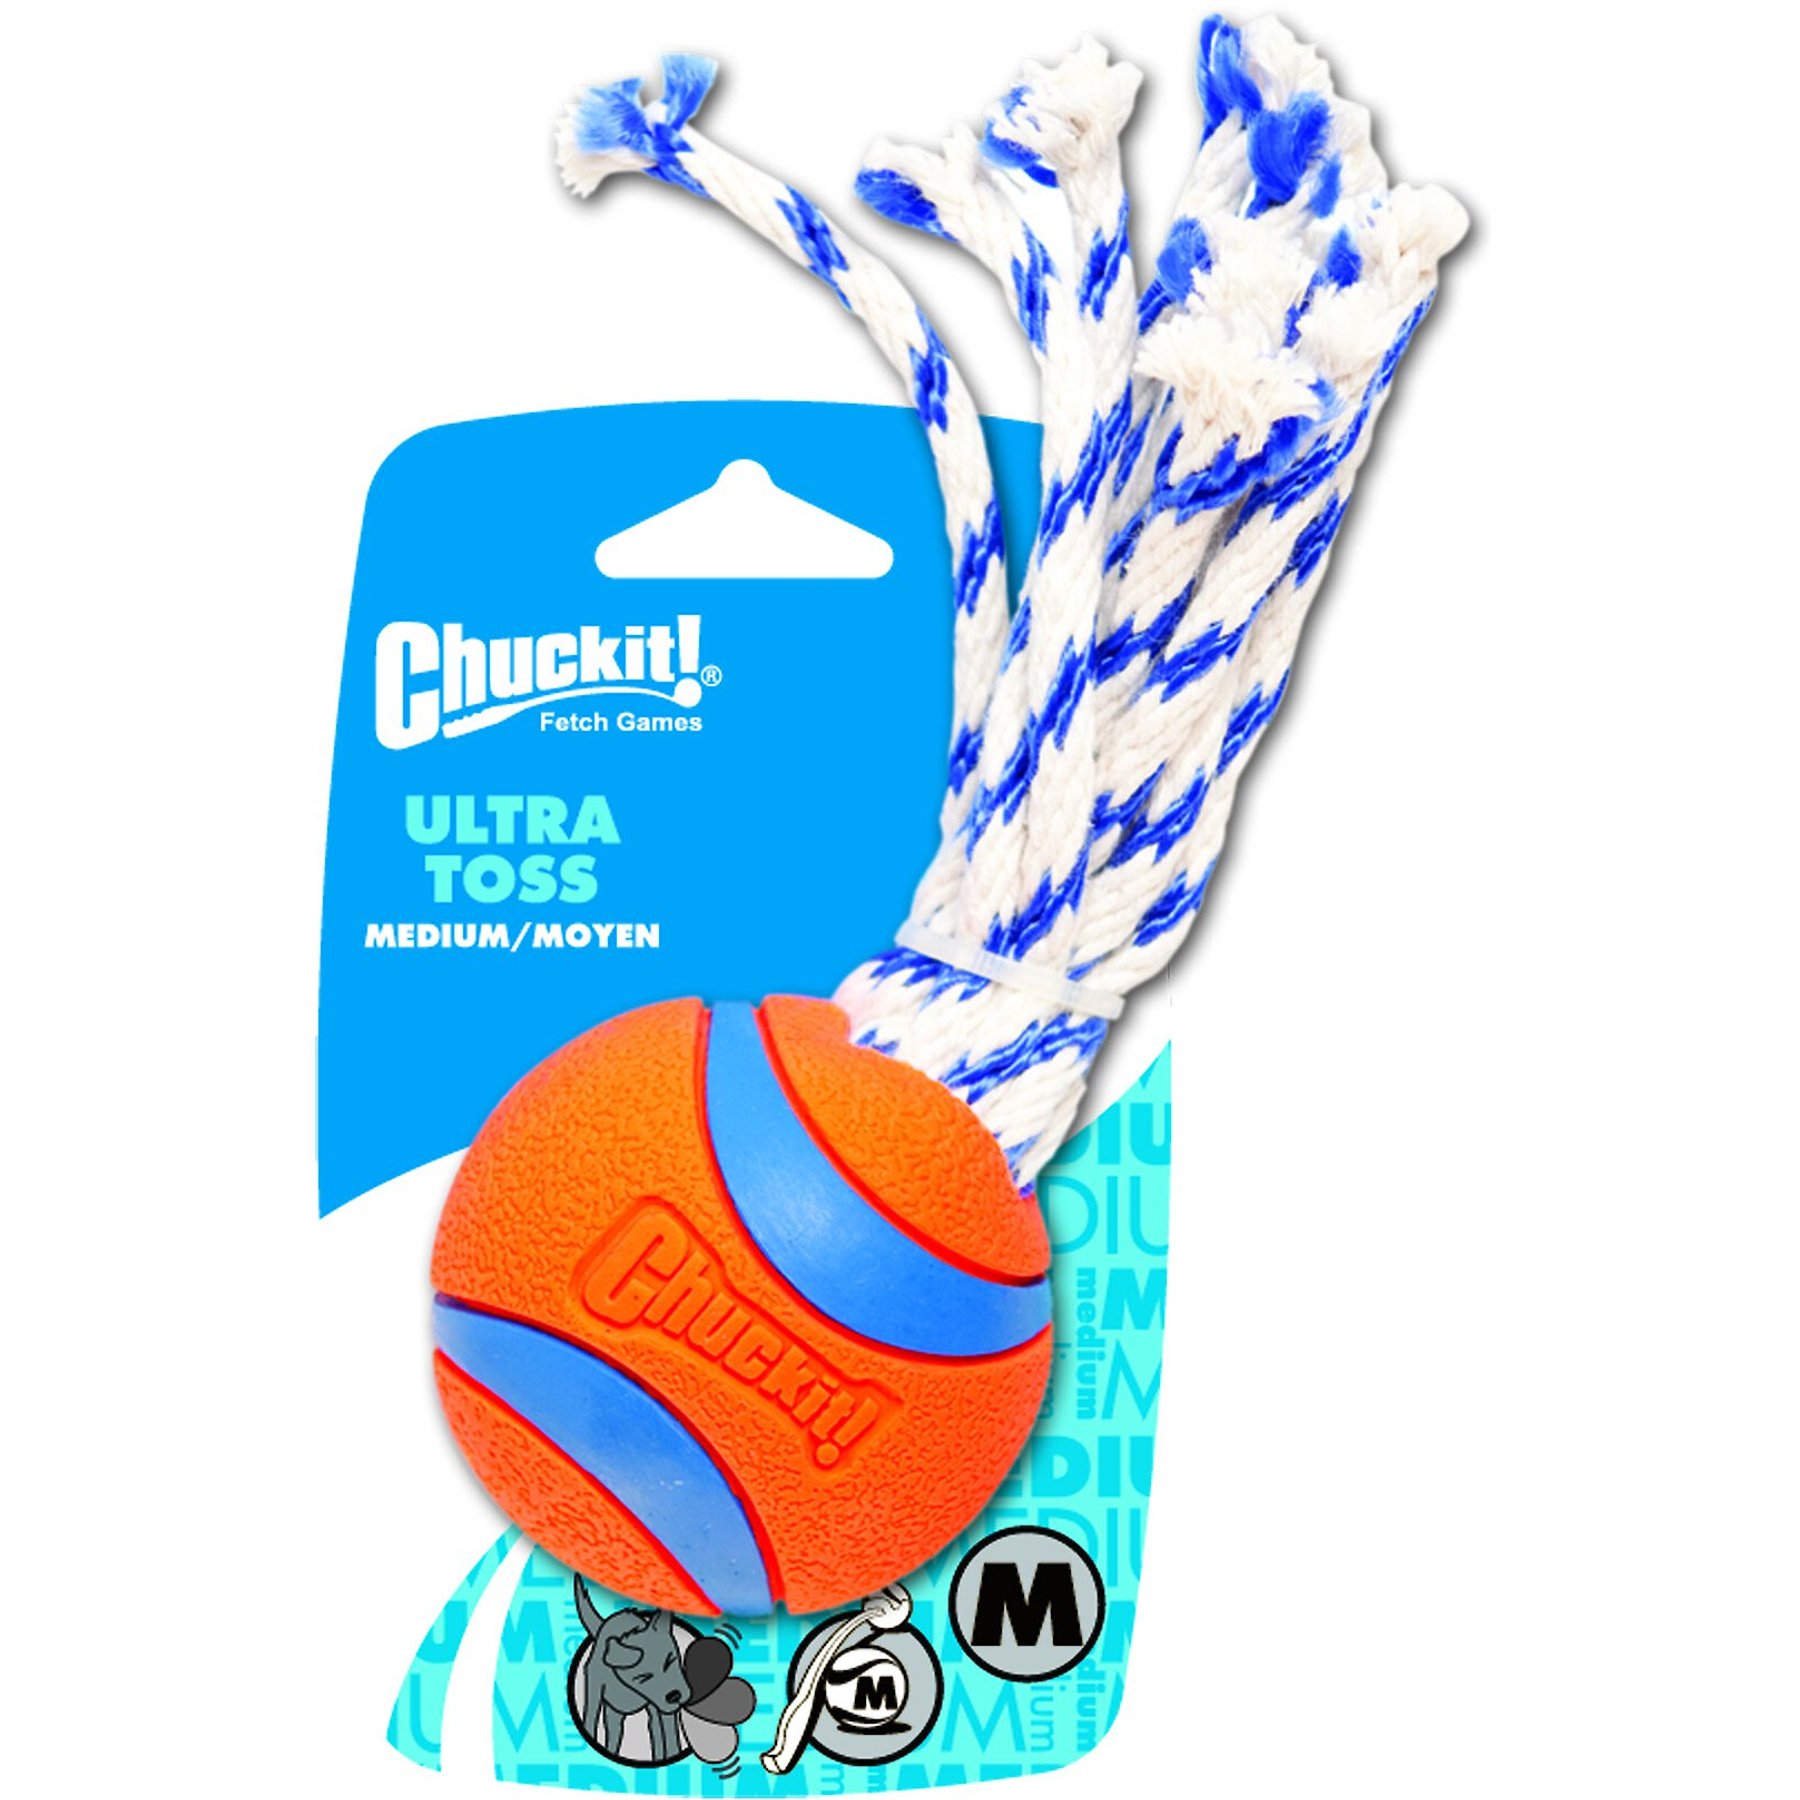 Chuckit! Ultra Toss Ball Tough Dog Toy